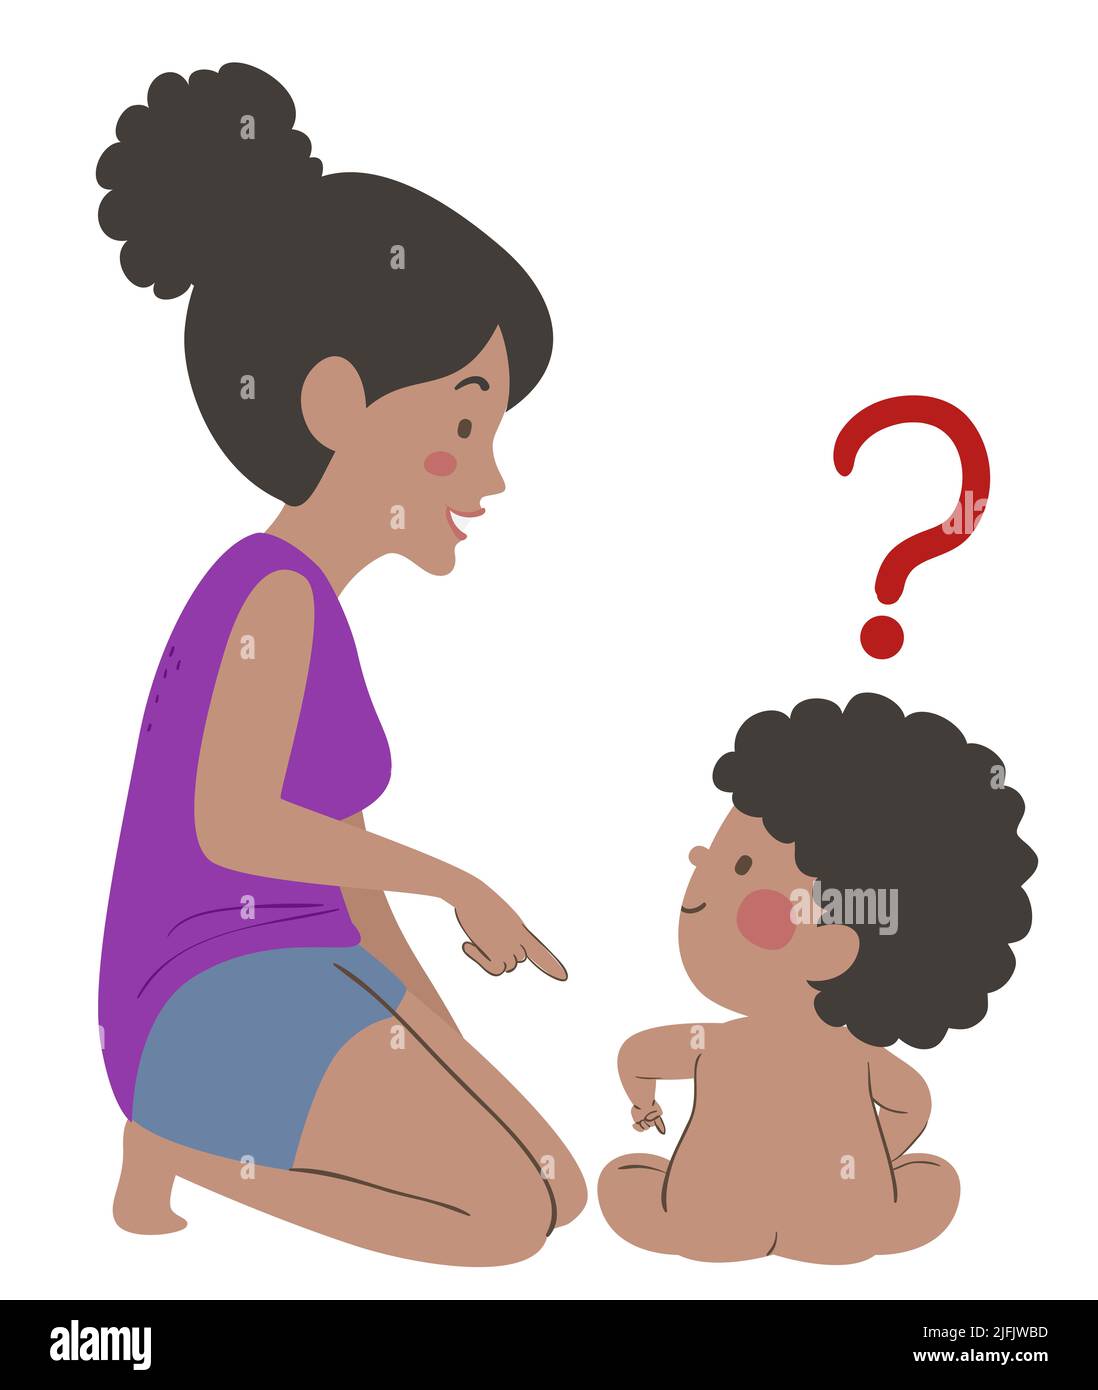 Ilustración de niño afroamericano desnudo sentado con mamá, señalando y haciendo preguntas sobre su parte privada del cuerpo Foto de stock